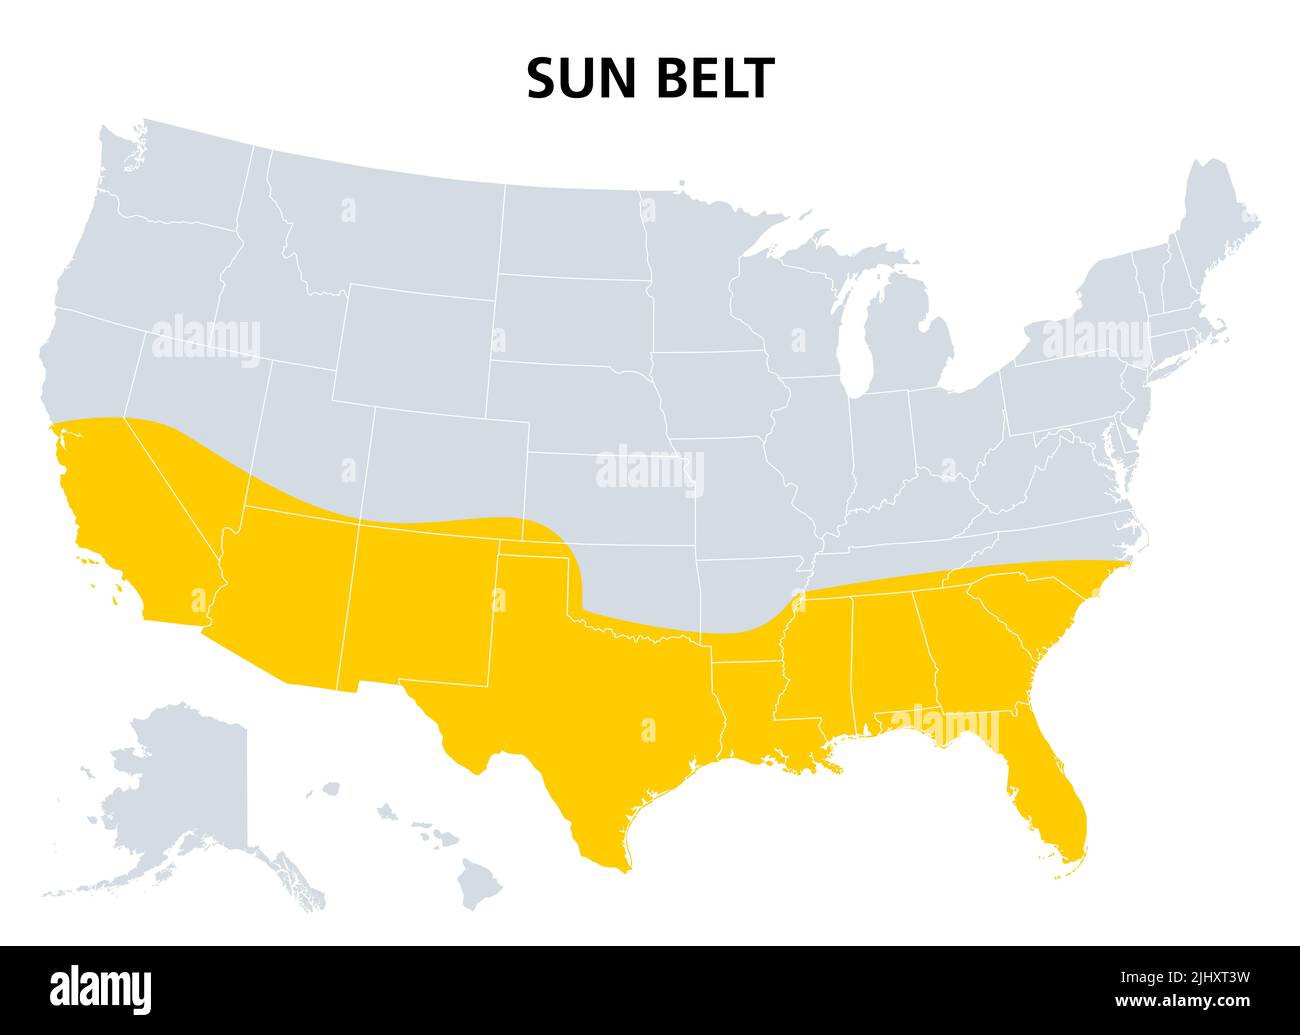 Cintura solare degli Stati Uniti, mappa politica. Regione con clima desertico, subtropicale e tropicale, che comprende gli stati più meridionali. Foto Stock